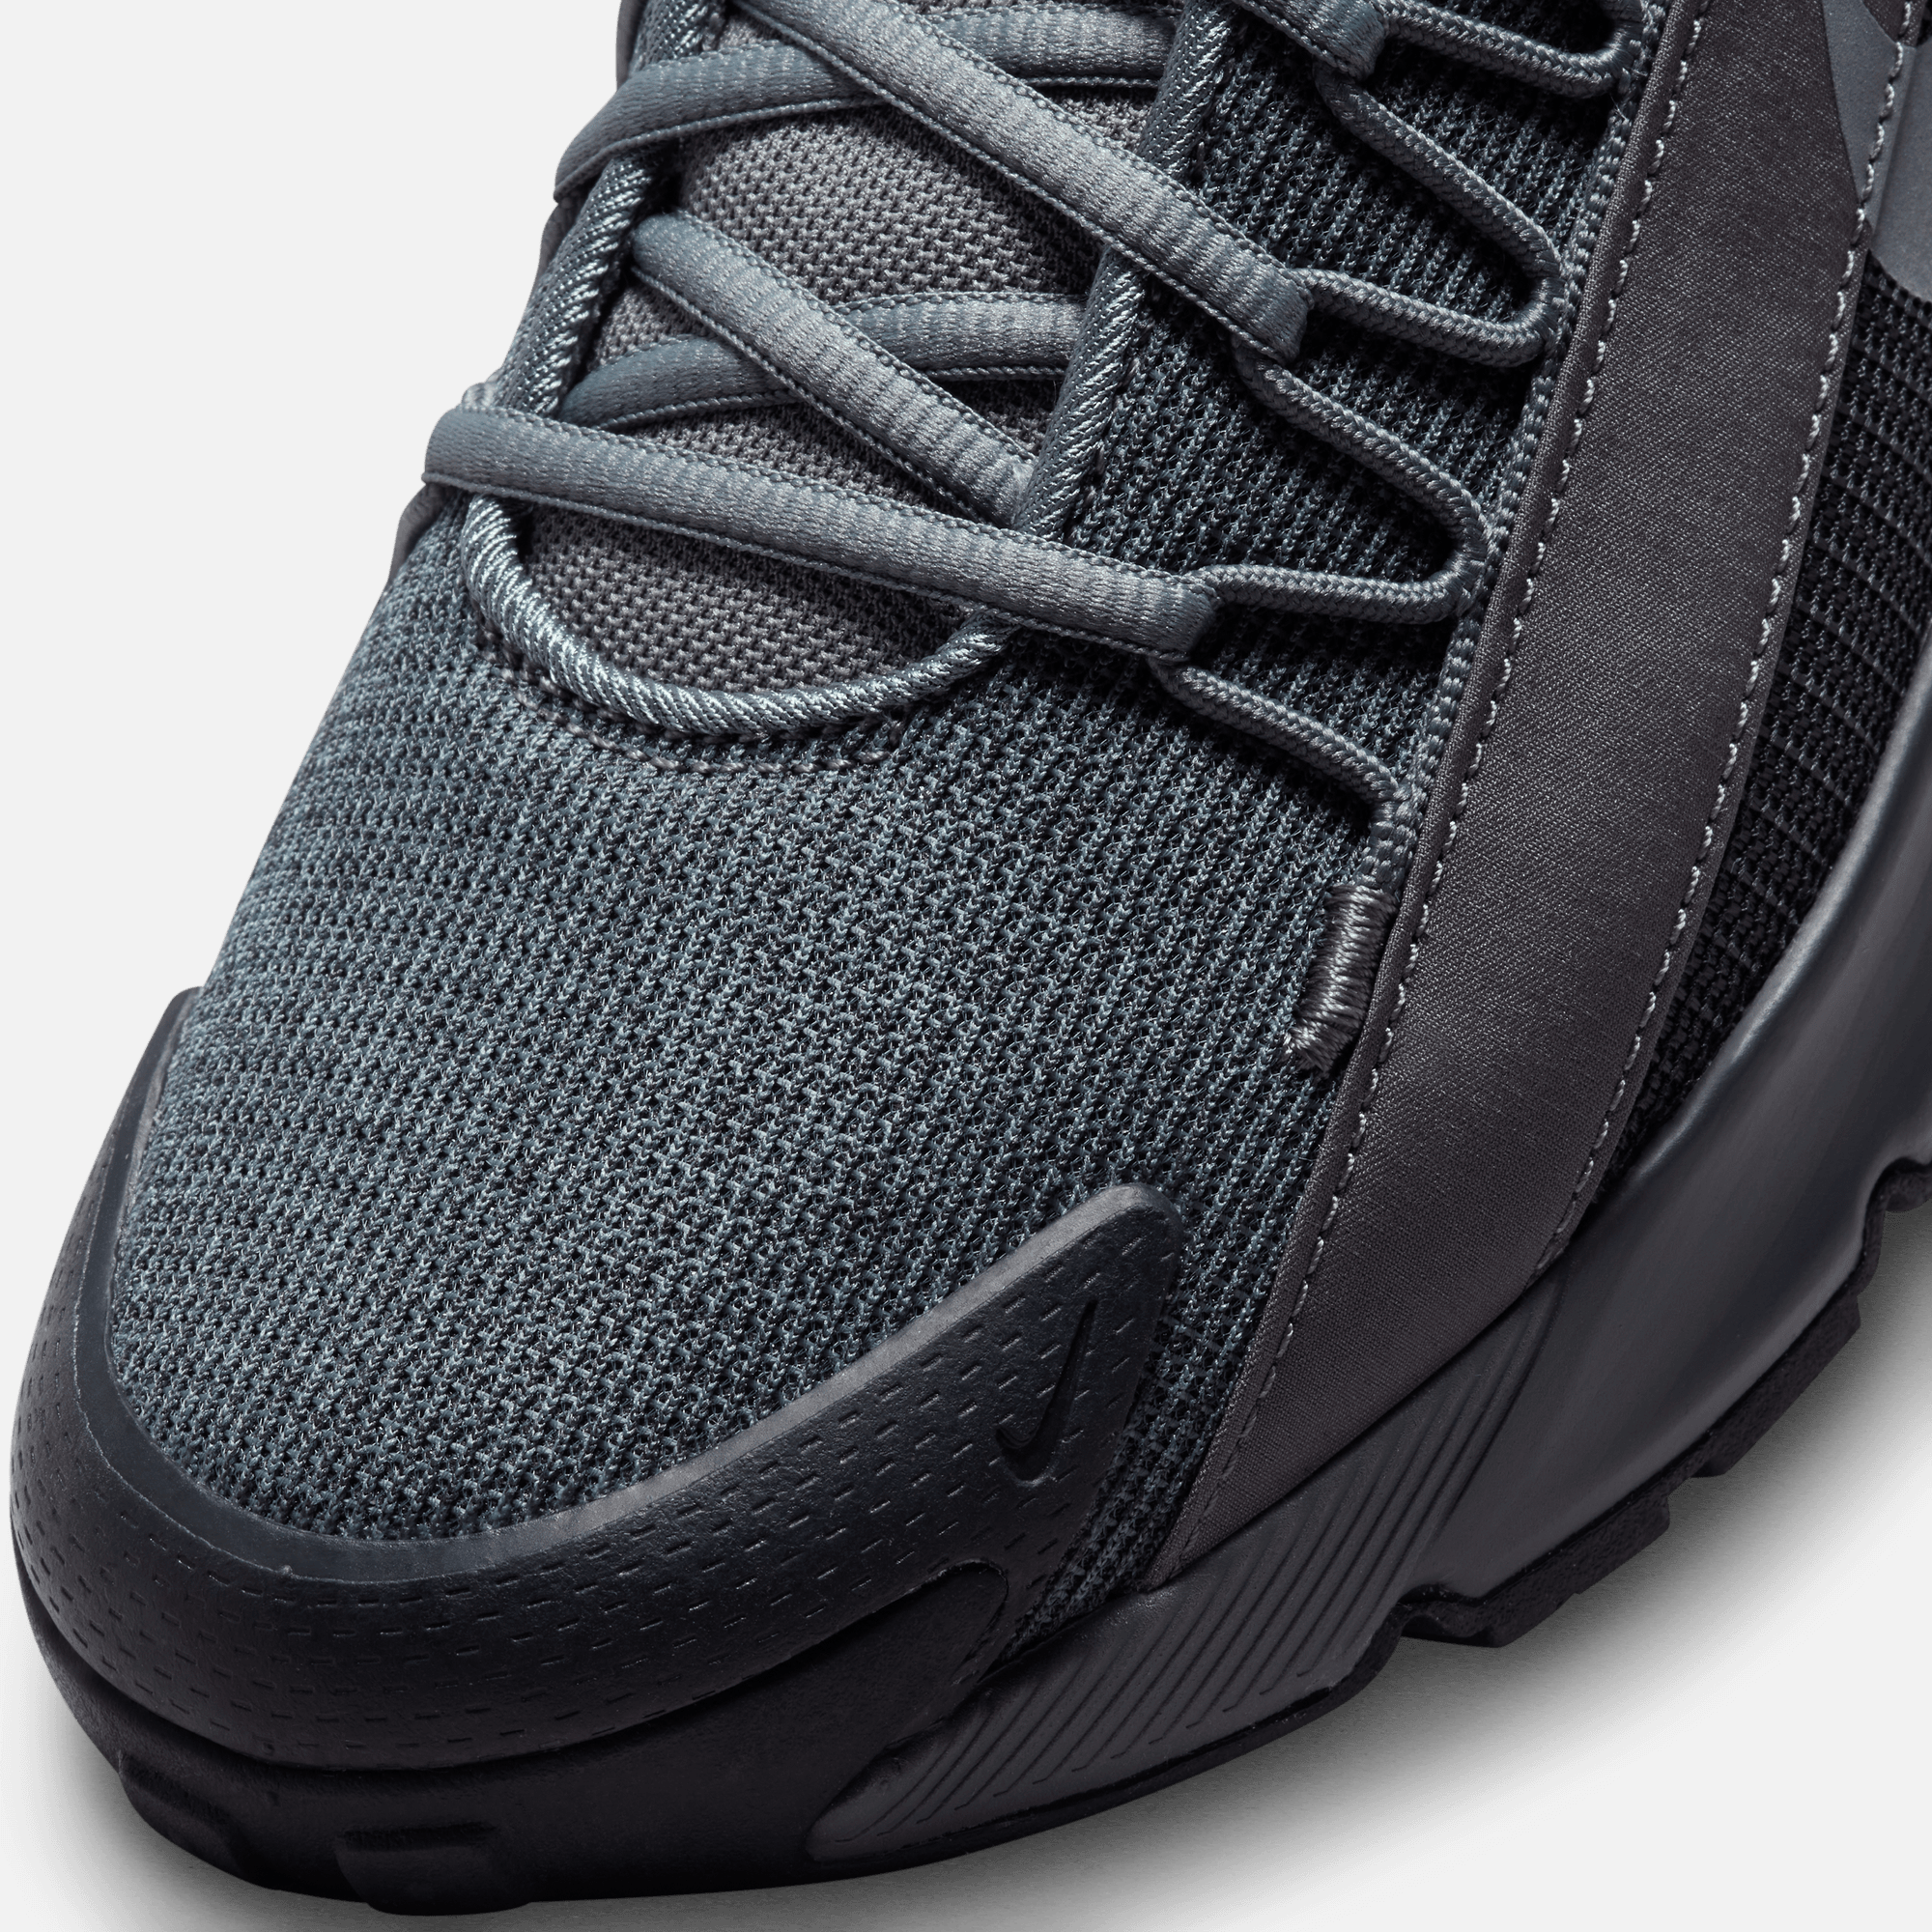 Nike Air Max Plus Roam Dark Smoke Grey